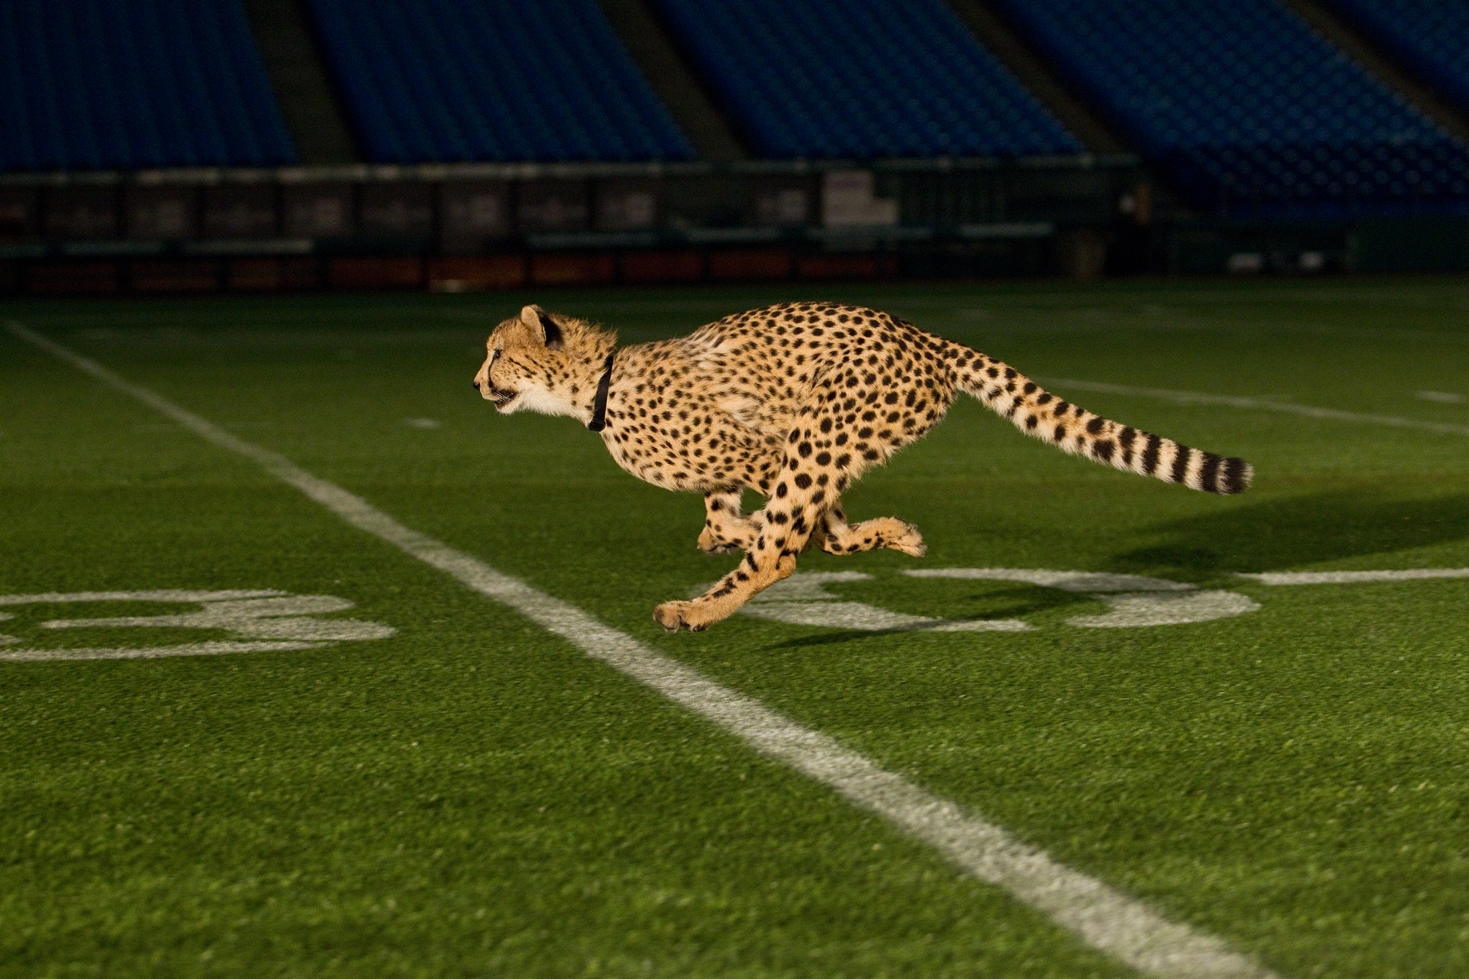 Analýza běhu obou zvířat ukázala, že kroky běžícího geparda jsou při stejné rychlosti o něco delší než u anglického chrta a také se odráží větší silou.